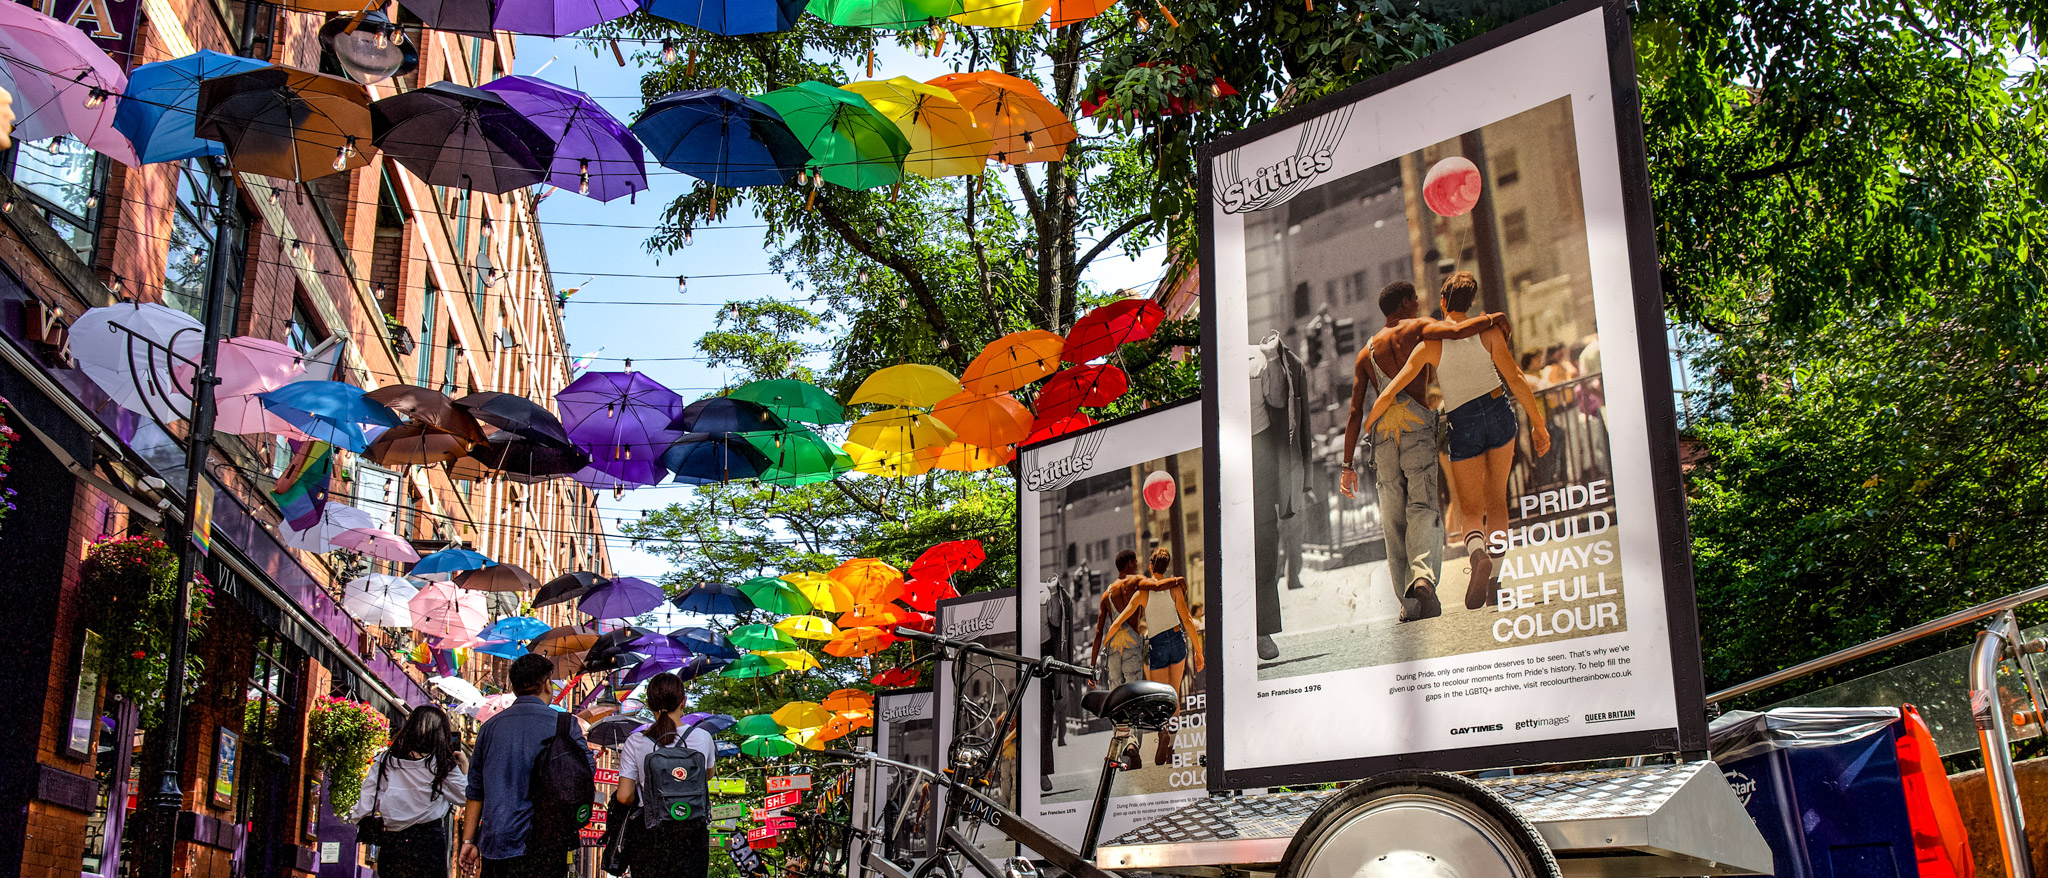 Rainbow Umbrellas over a pedestrian walkway for Pride